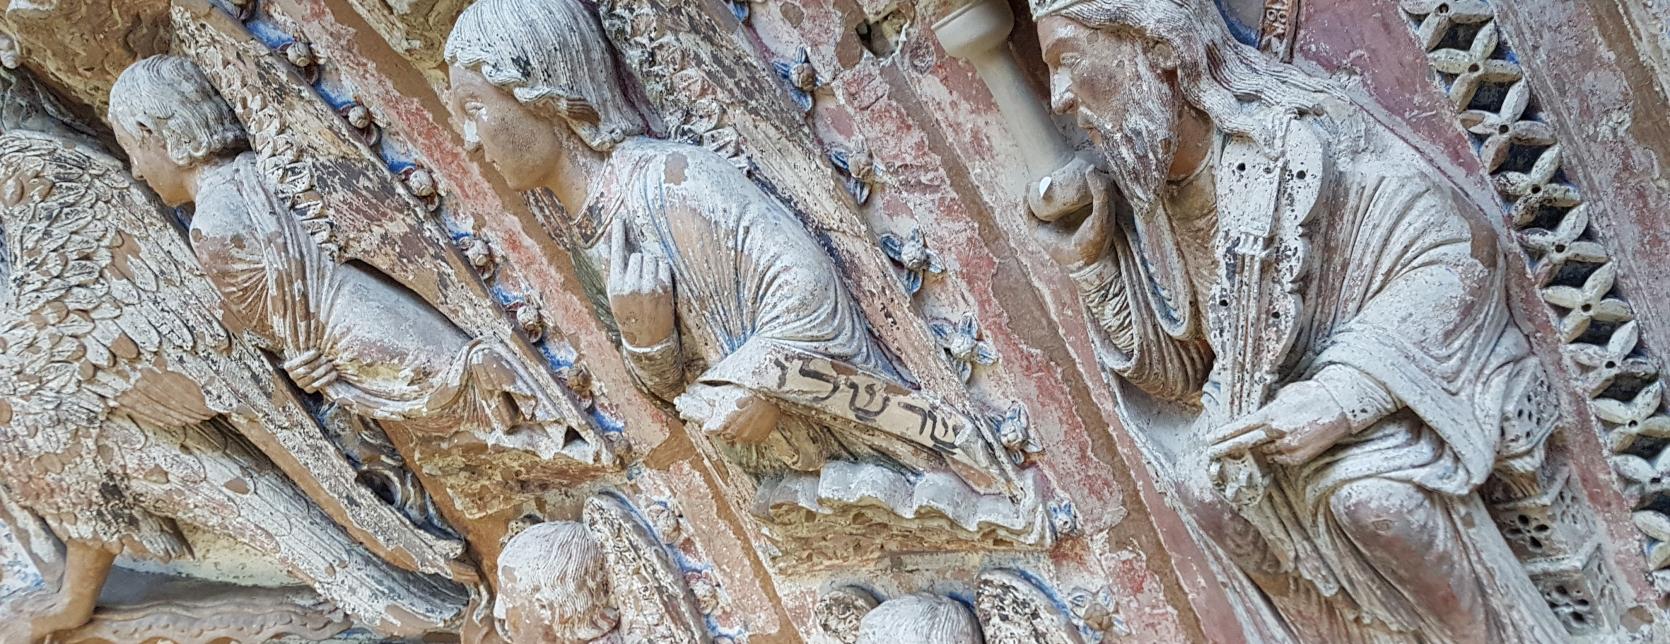 cathédrale de Reims restauration ciment naturel prompt